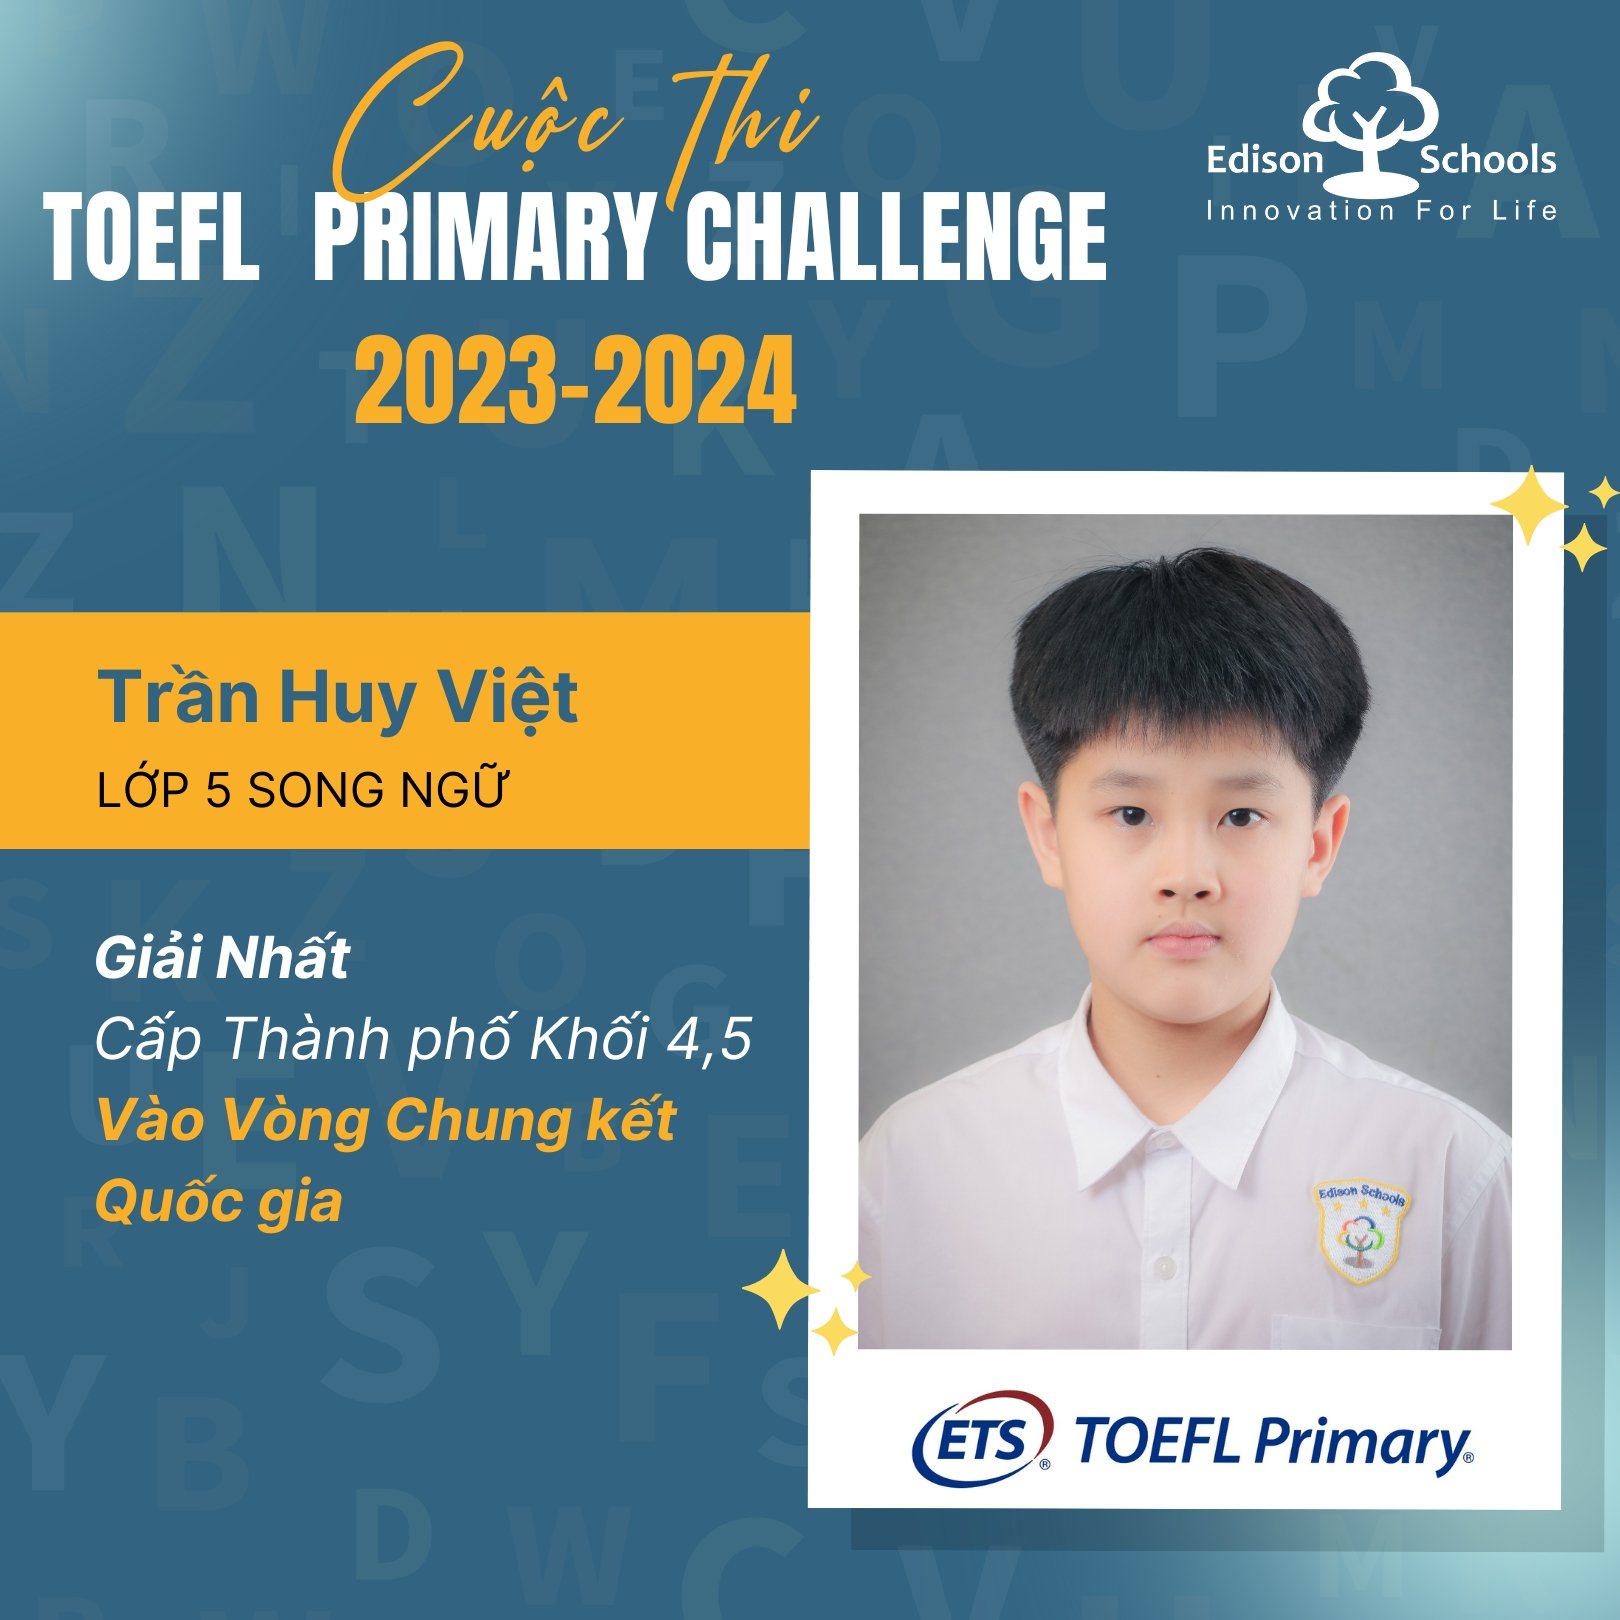 Xin chúc mừng các bạn học sinh trong cuộc thi Toefl Primary Challenge